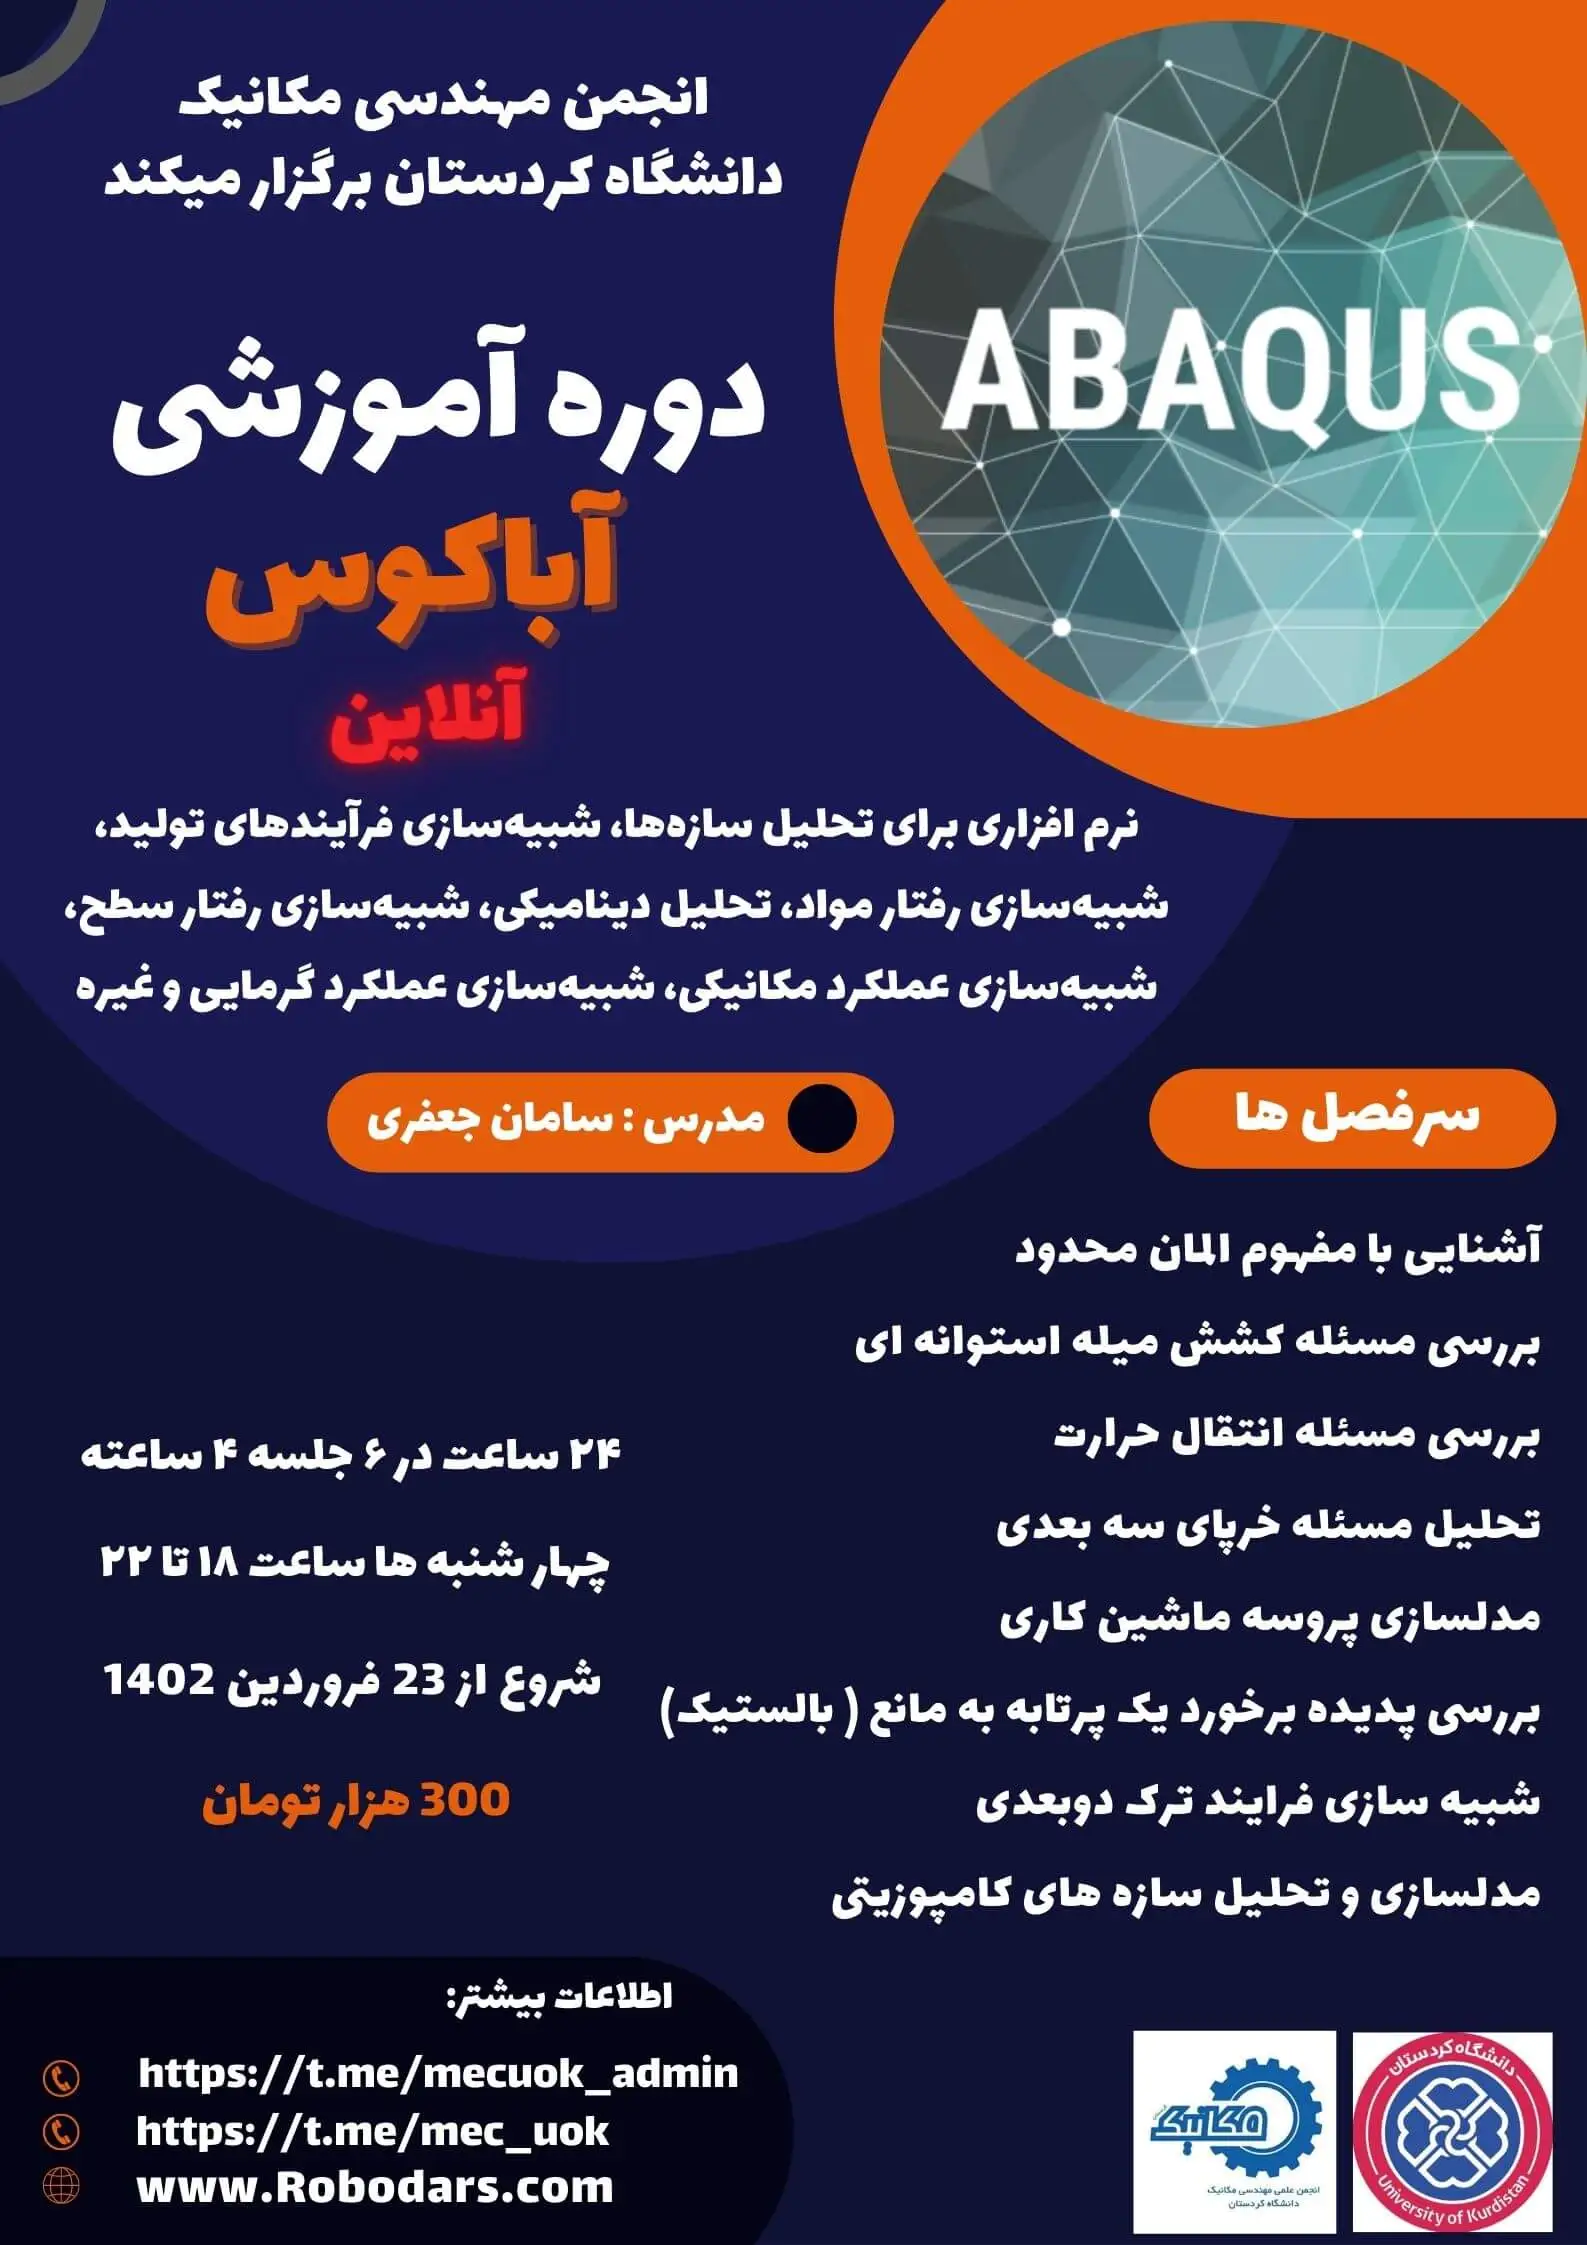 پوستر دوره آموزش آباکوس انجمن مکانیک دانشگاه کردستان